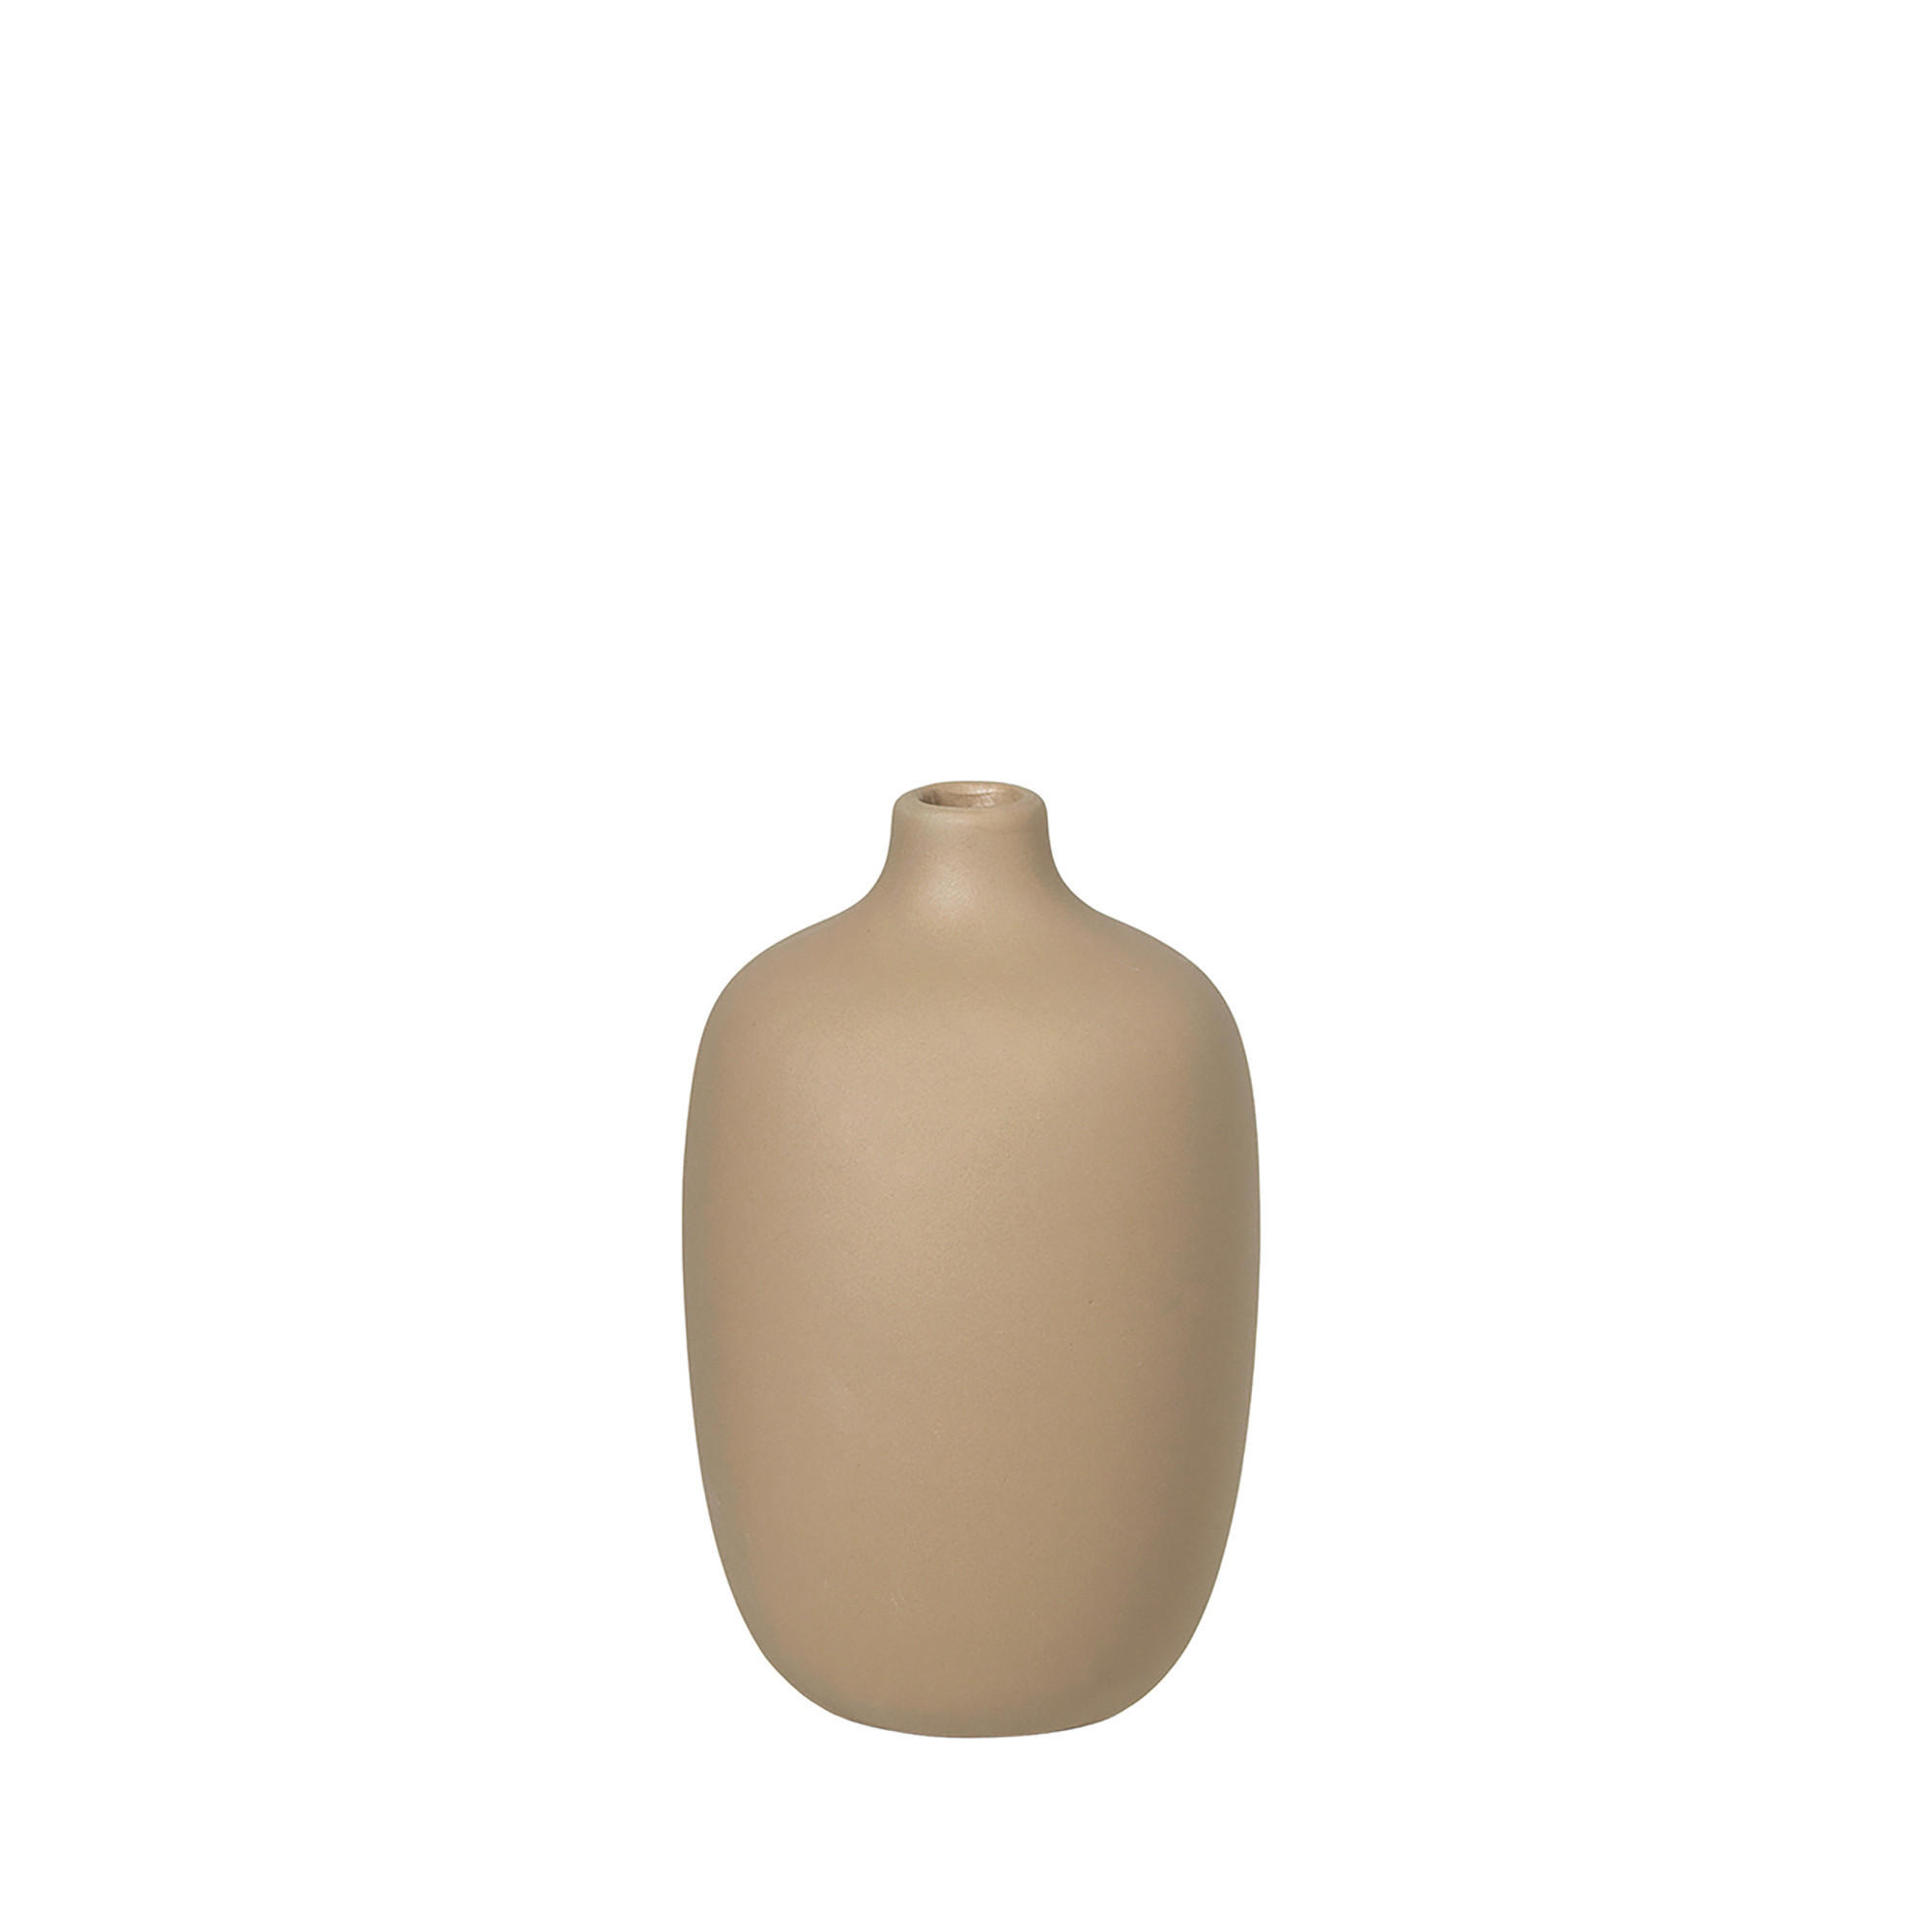 VASE CEOLA 13,0 cm  - Cappuccino, Design, Keramik (8,0/13,0cm) - Blomus